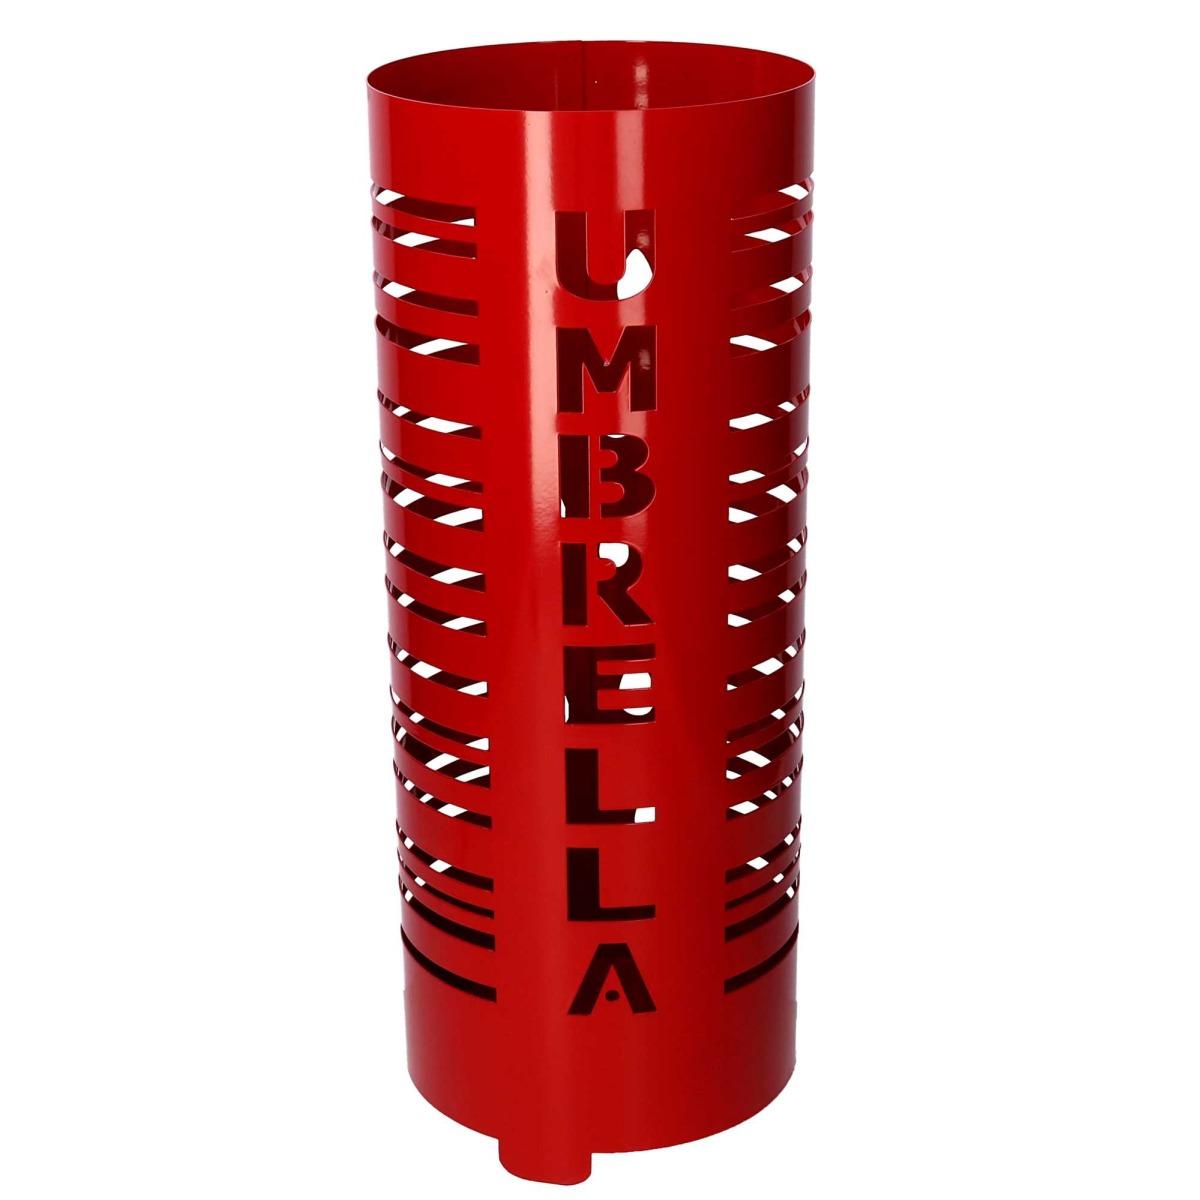 Portaombrelli Metallo Scritta Umbrella Rosso Tondo Cm.Ø19H49